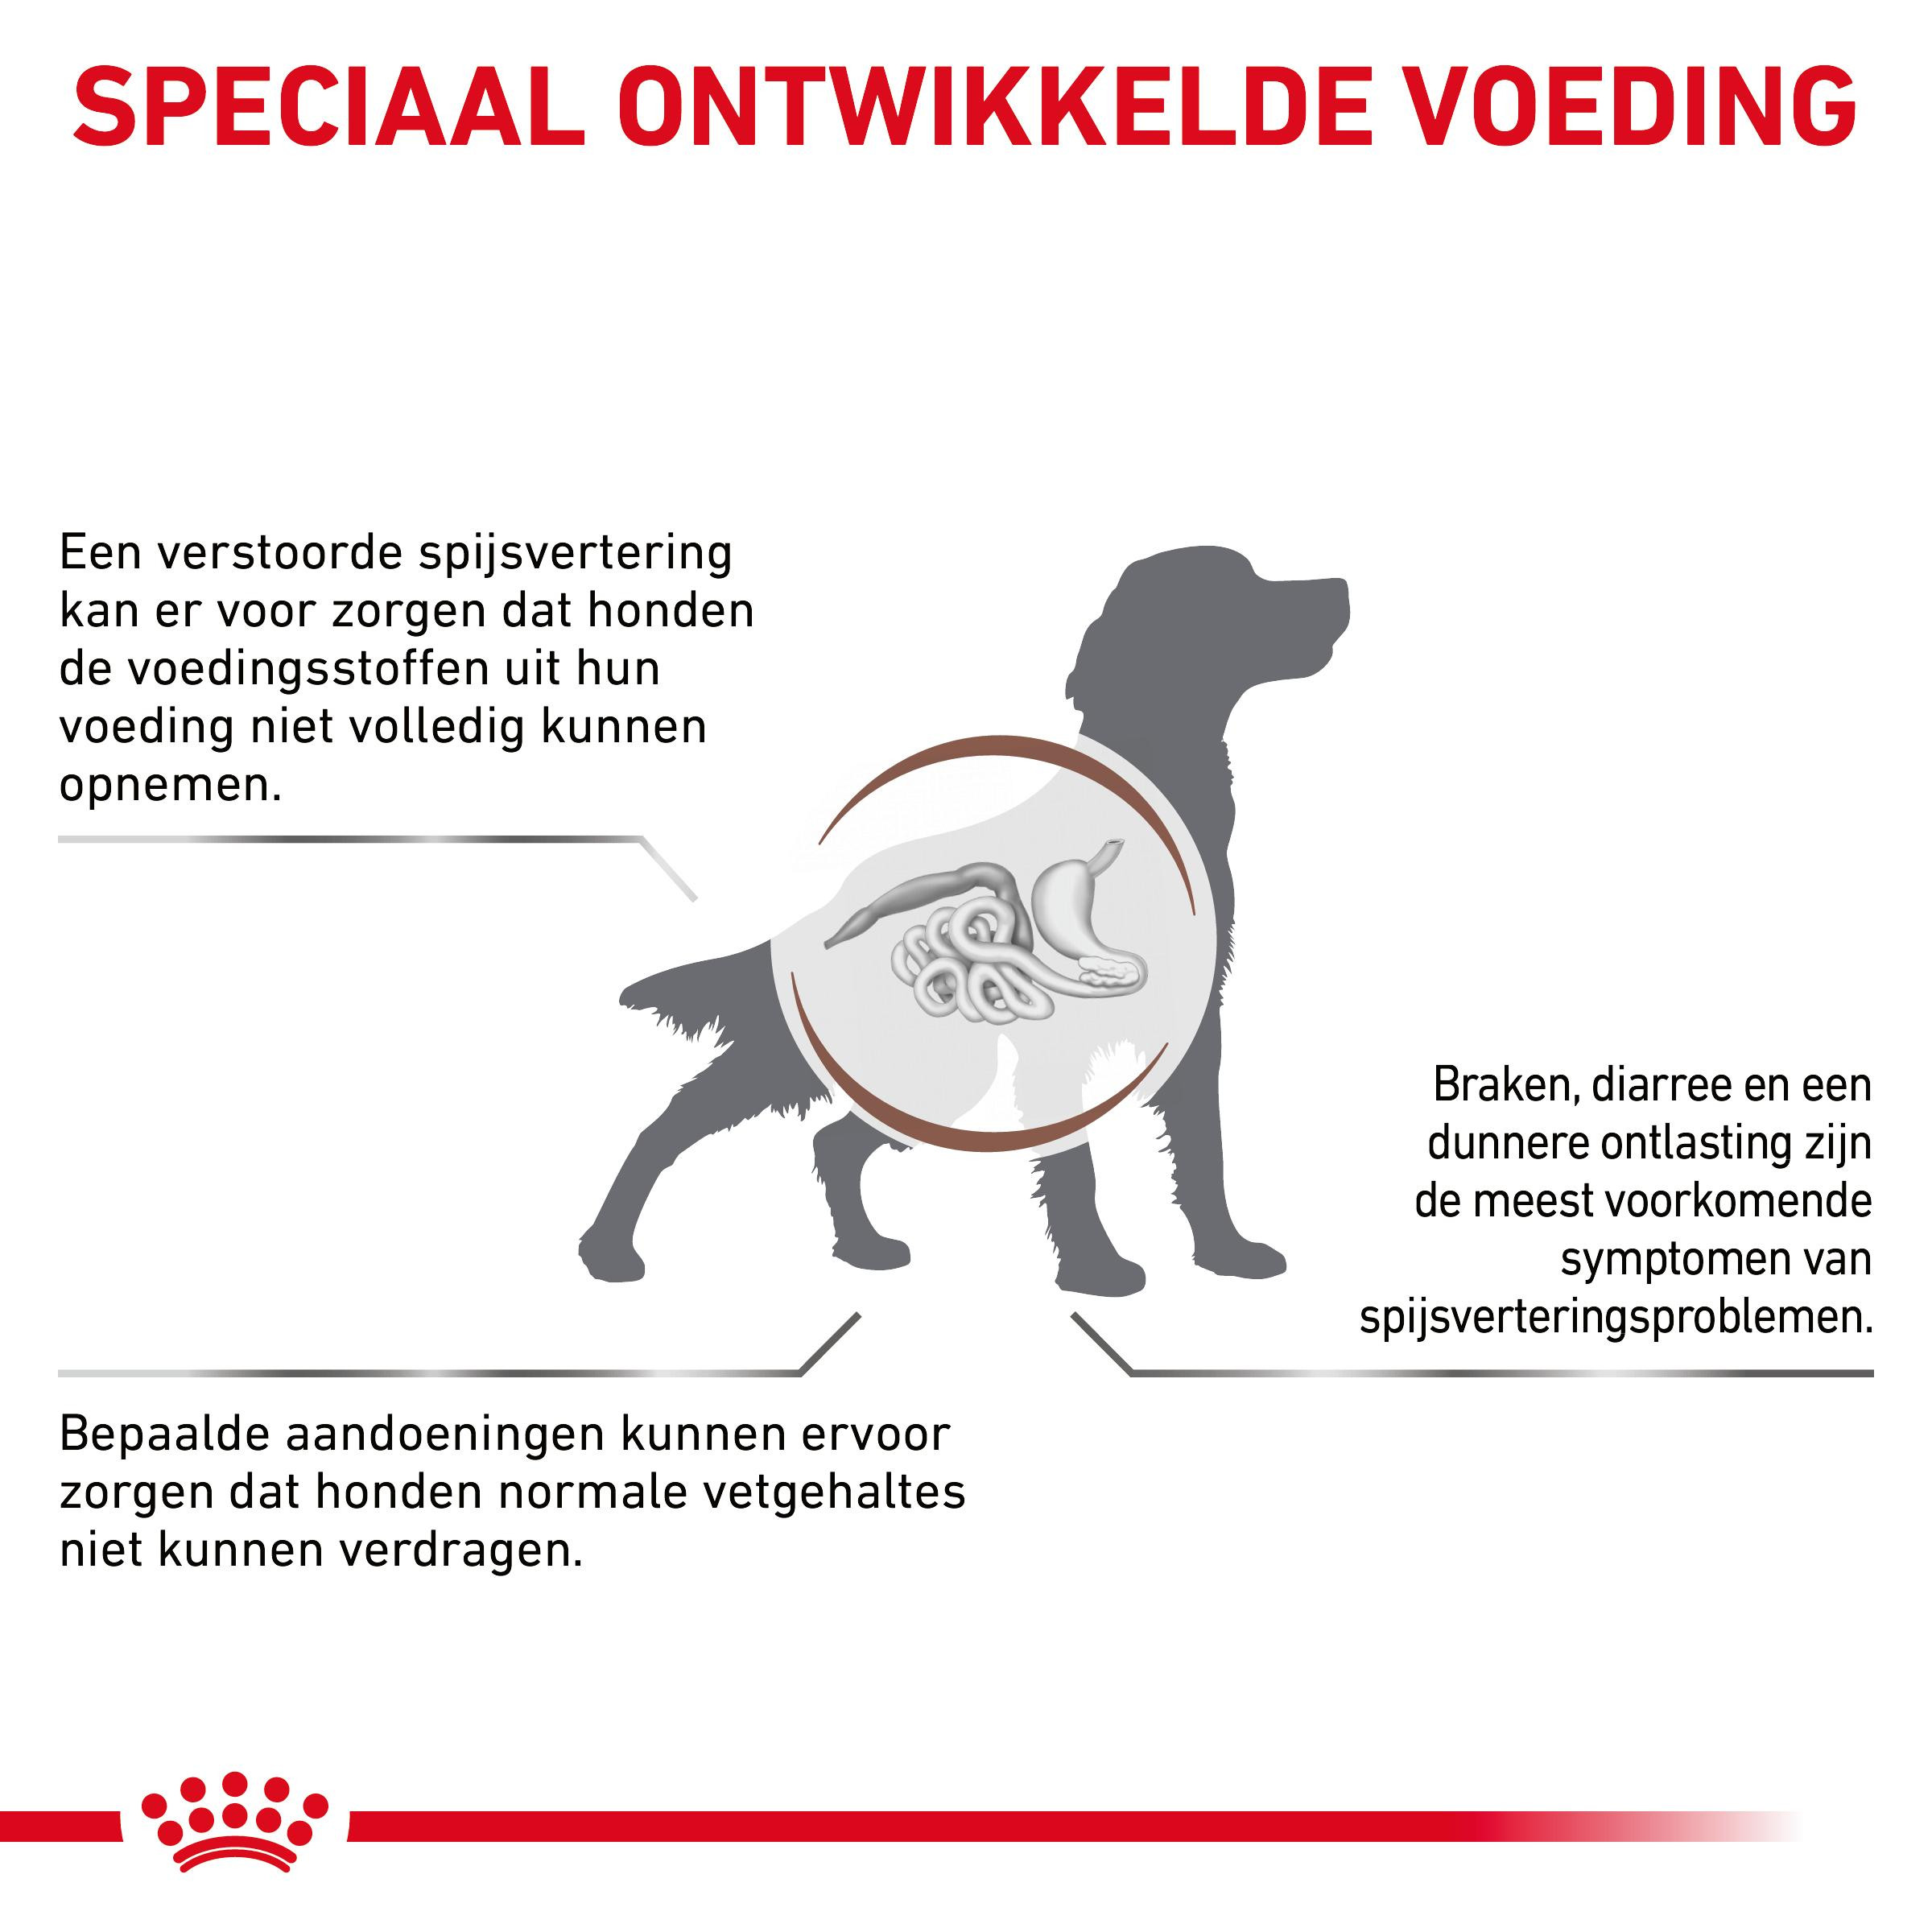 Royal Canin Veterinary Diet Gastro Intestinal Low Fat blik hondenvoer